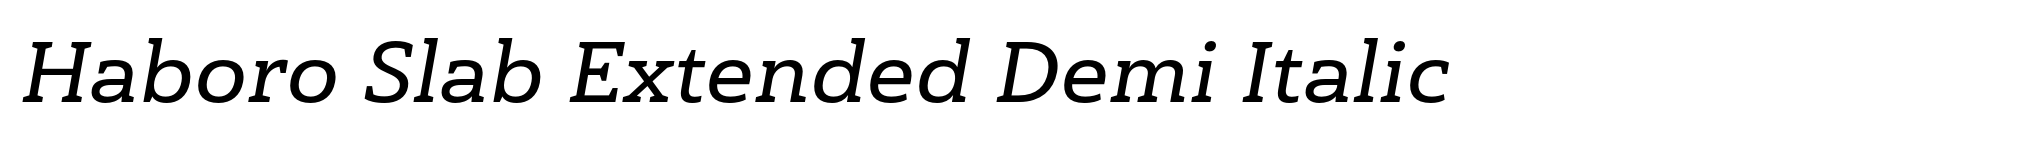 Haboro Slab Extended Demi Italic image